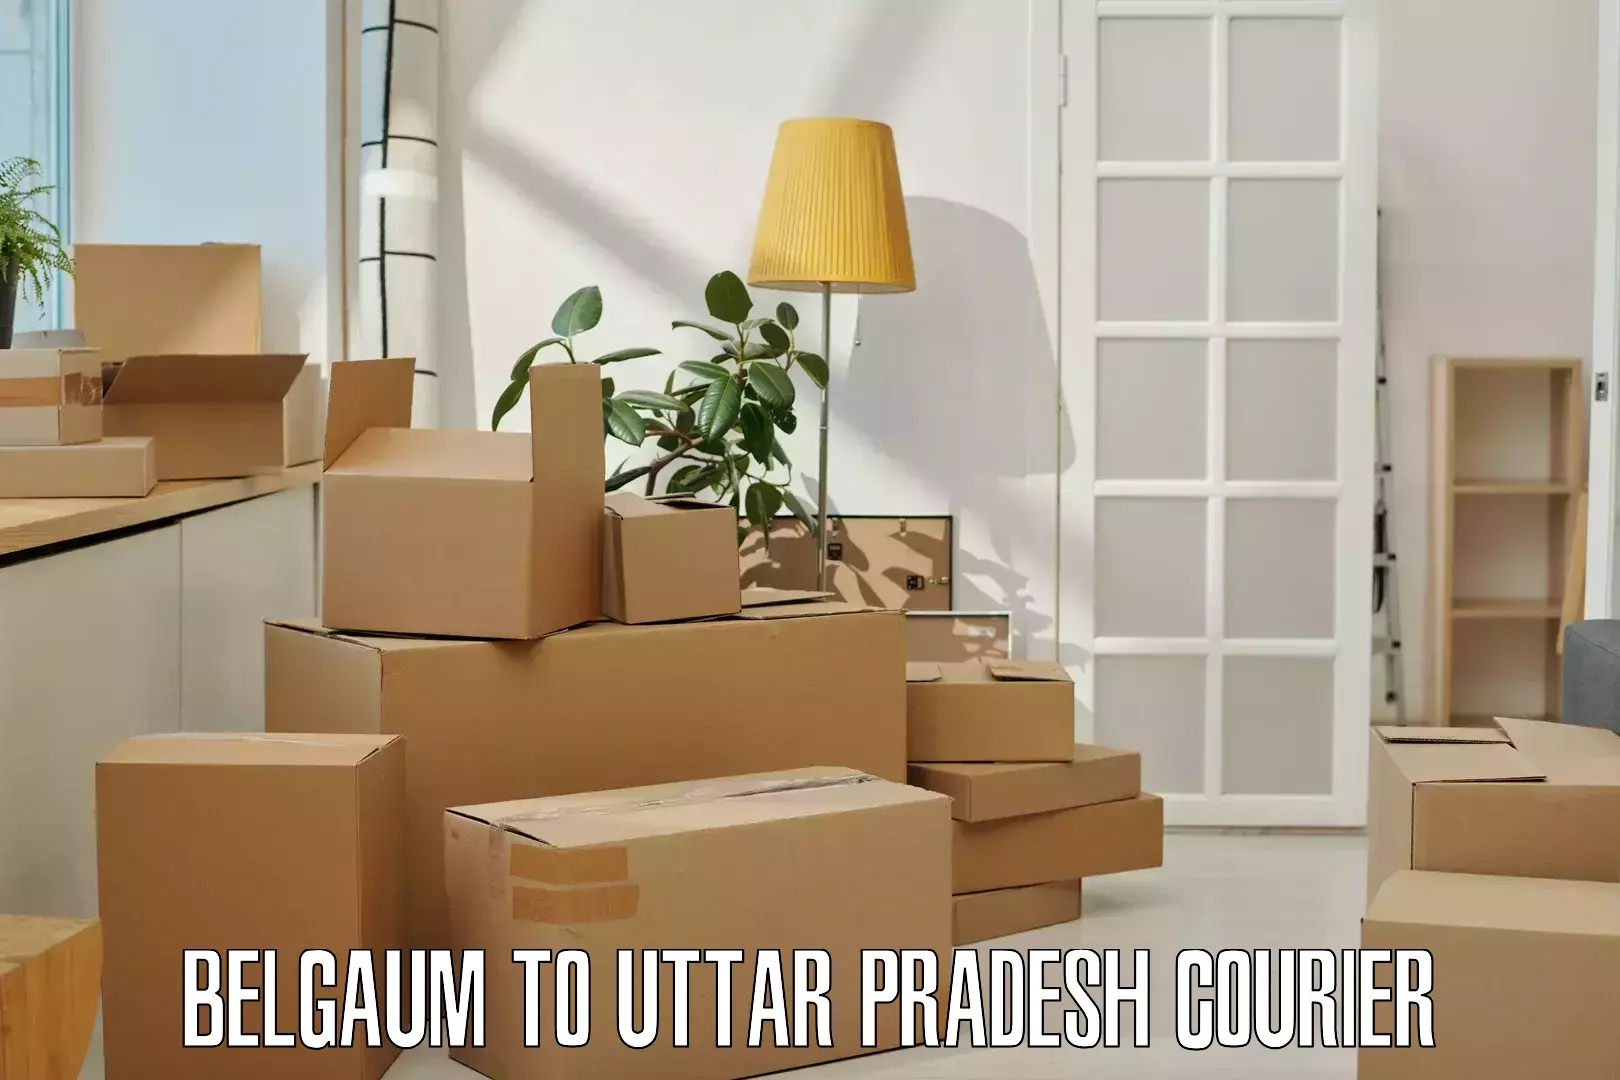 24-hour courier service Belgaum to Uttar Pradesh